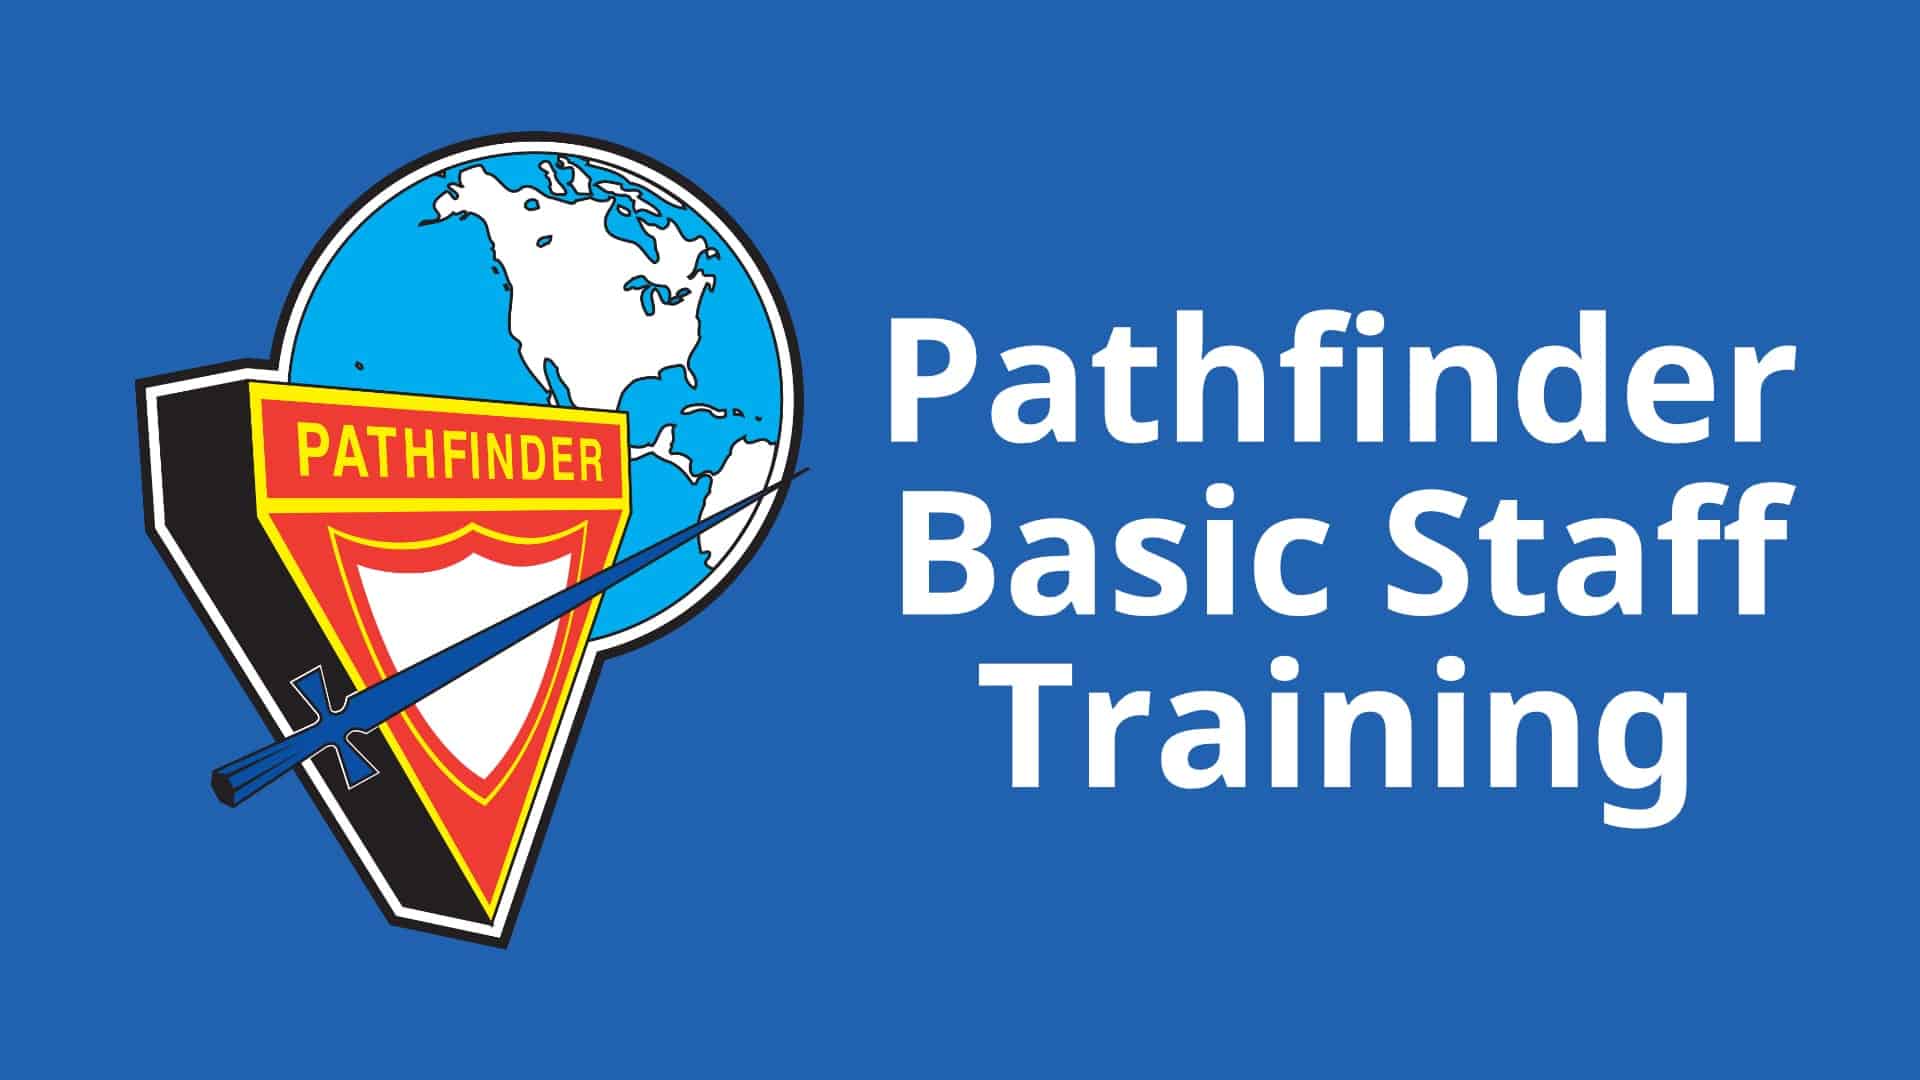 Pathfinder Basic Staff Training Course Image